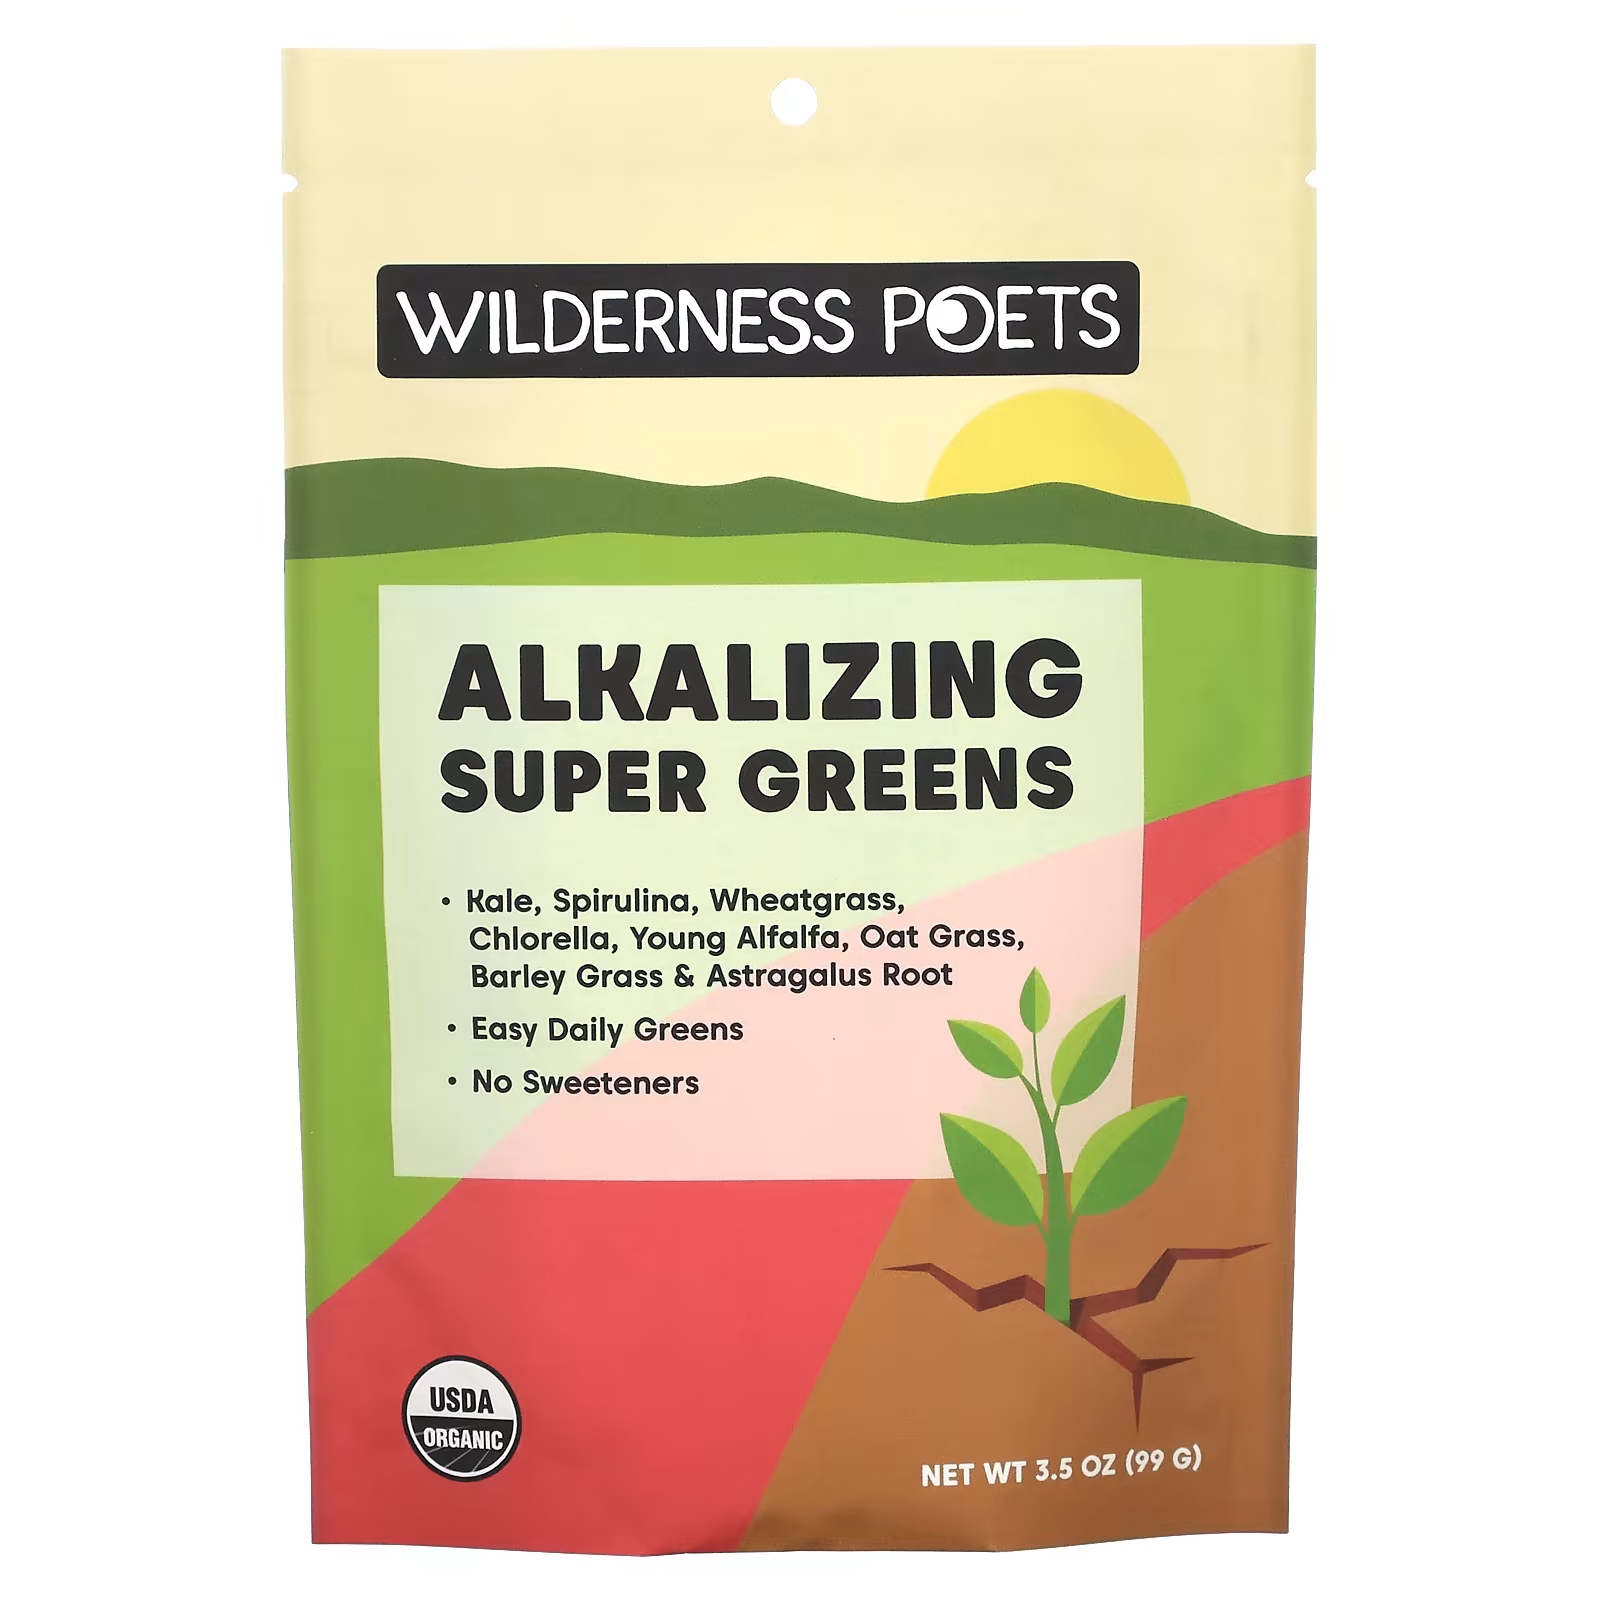 Органическая подщелачивающая суперзелень, 3,5 унции (99 г) Wilderness Poets wilderness poets лиофилизированный порошок асаи 99 г 3 5 унции